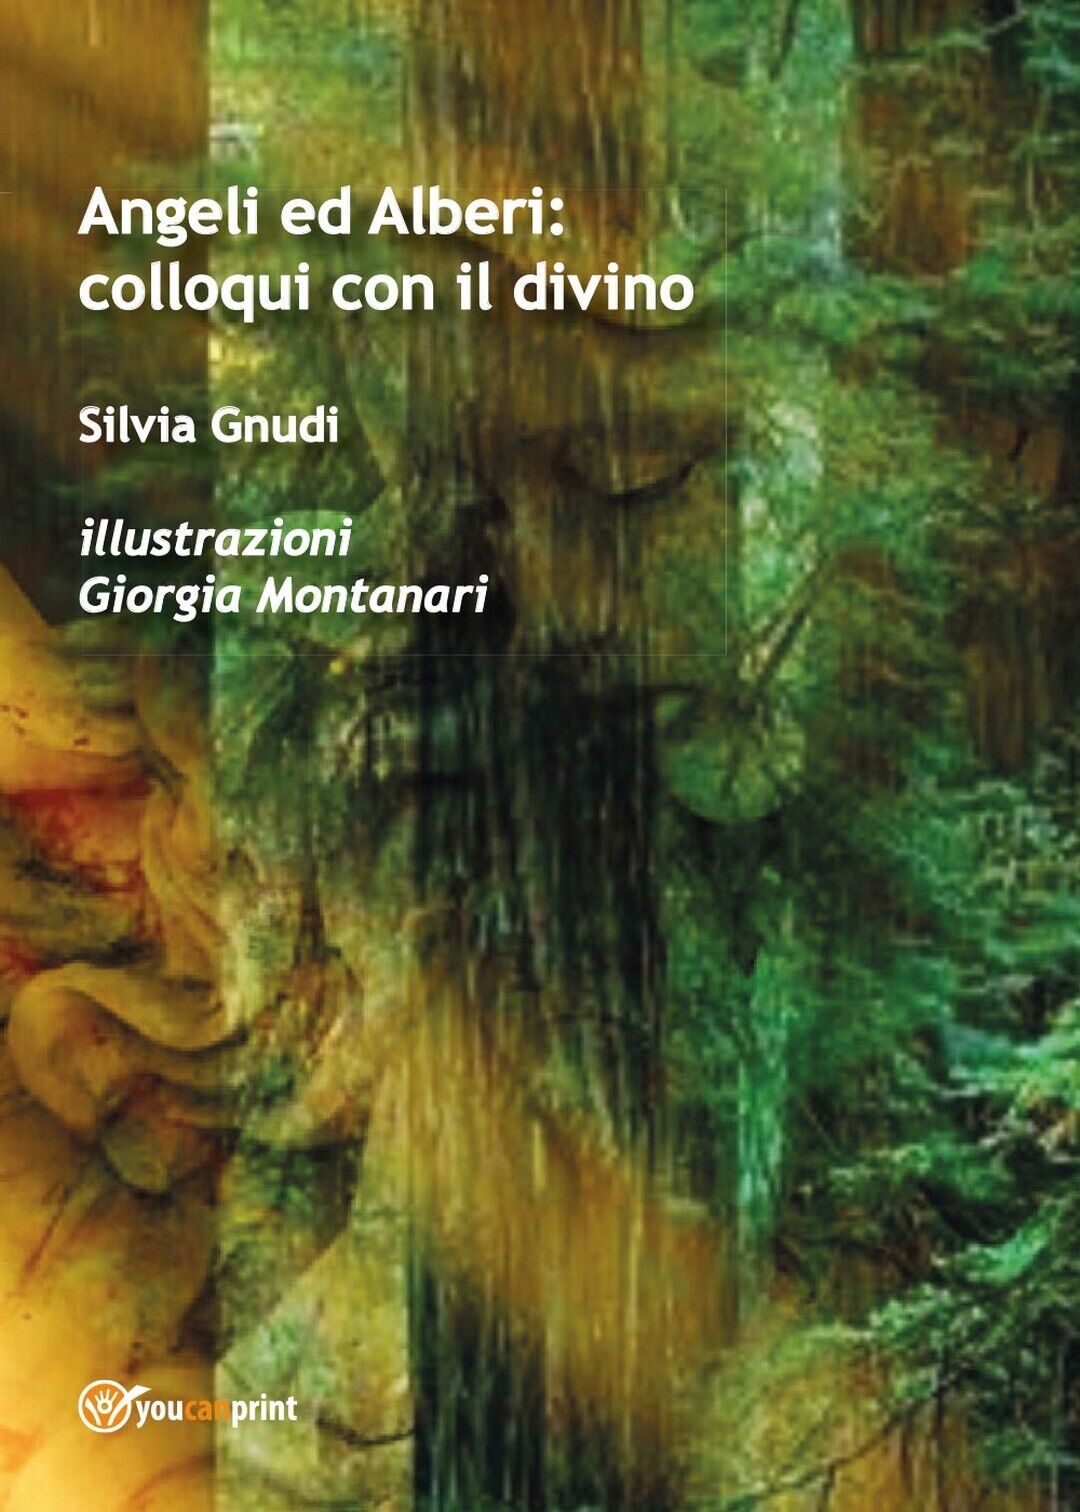 Angeli ed Alberi: colloqui con il divino  di Silvia Gnudi, G. Montanari,  2016